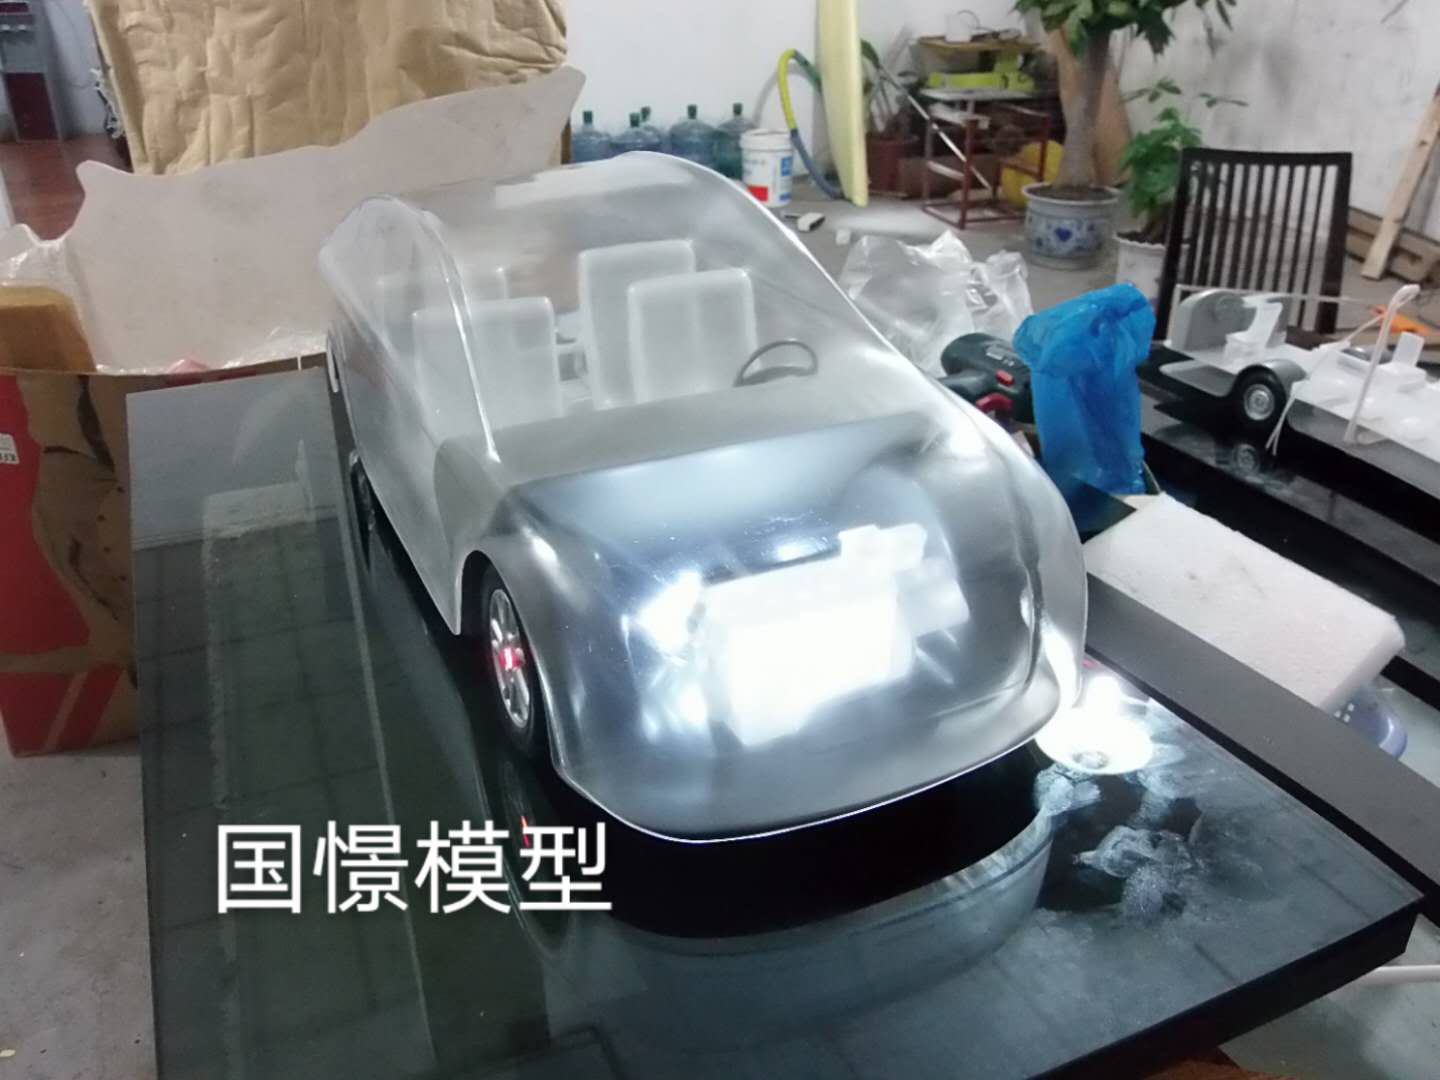 吴忠透明车模型